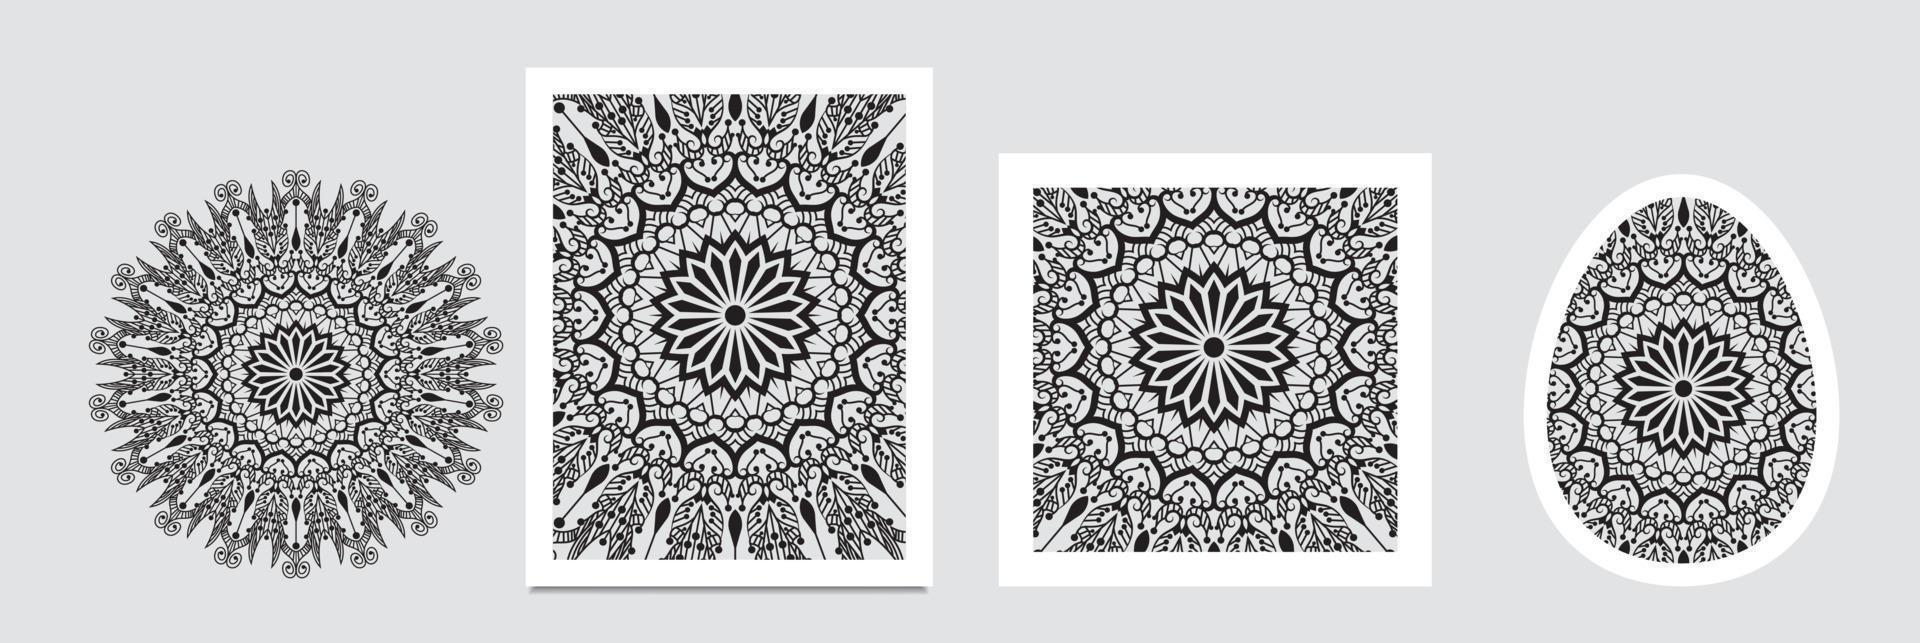 mandala baner. dekorativ blomma mandala bakgrund med plats för text. färgrik abstrakt grafik. arabicum islamic öst stil vektor